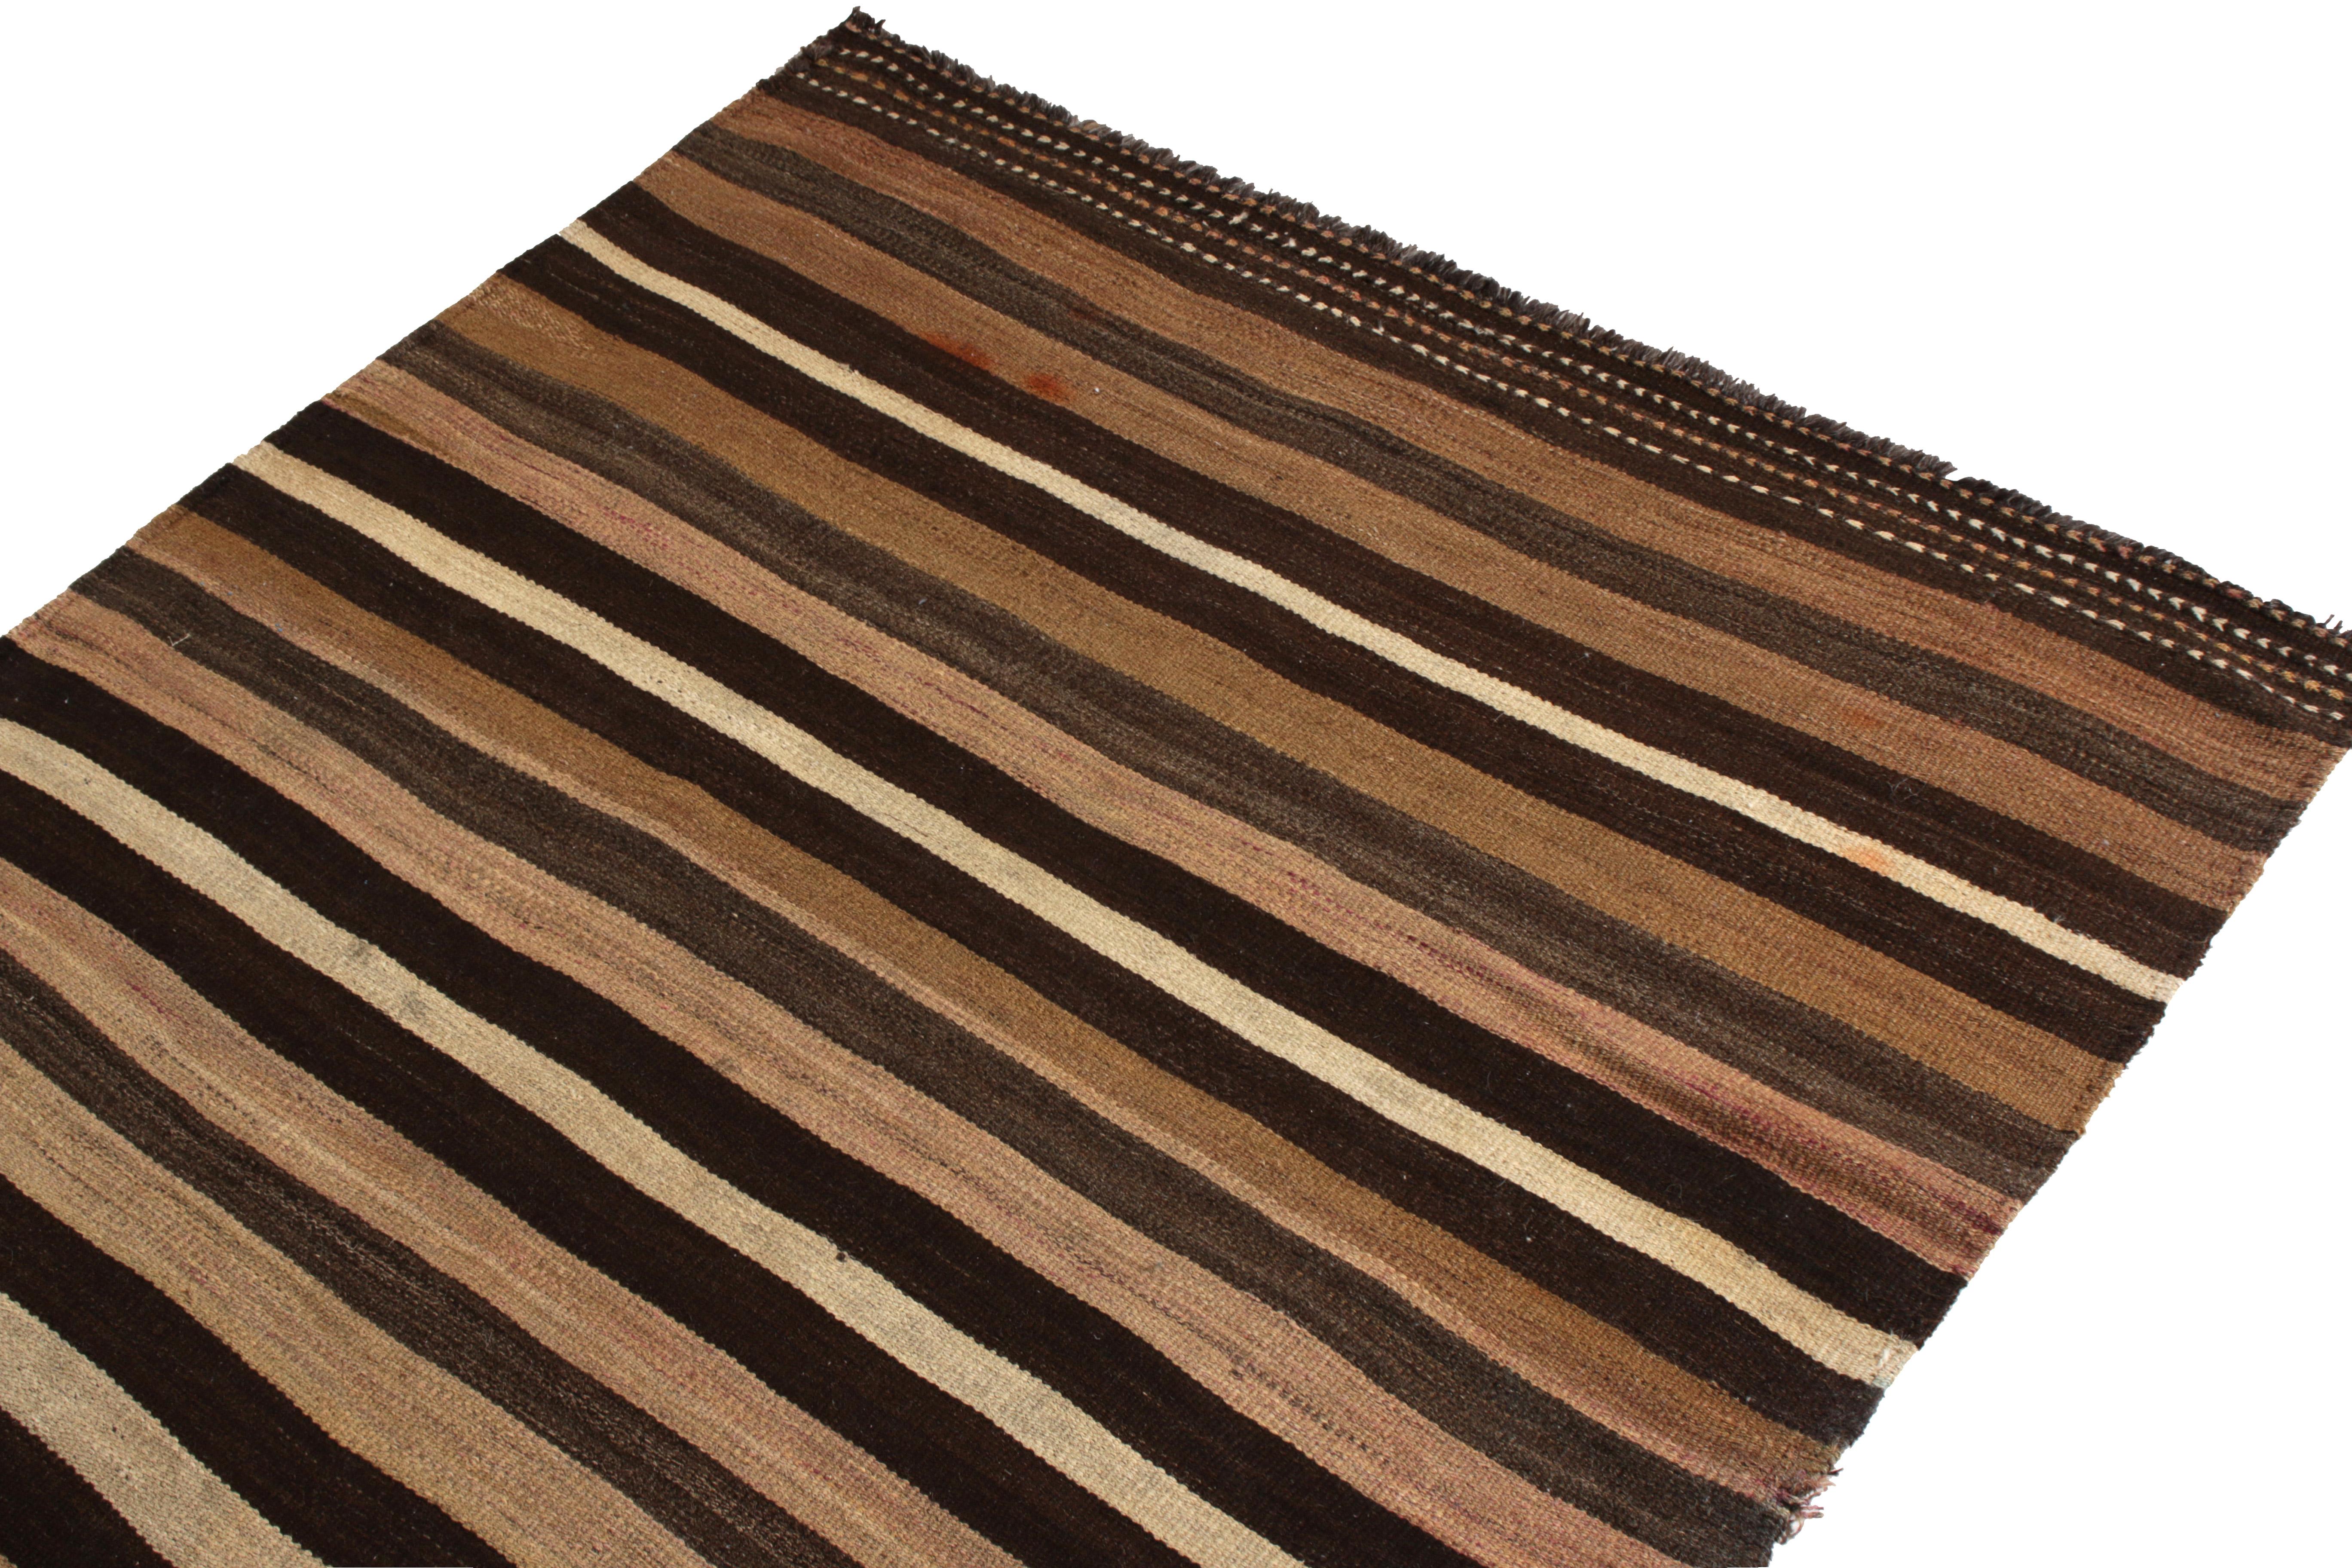 Hand-Woven Handmade Midcentury Vintage Kilim in Beige Brown Striped Pattern by Rug & Kilim